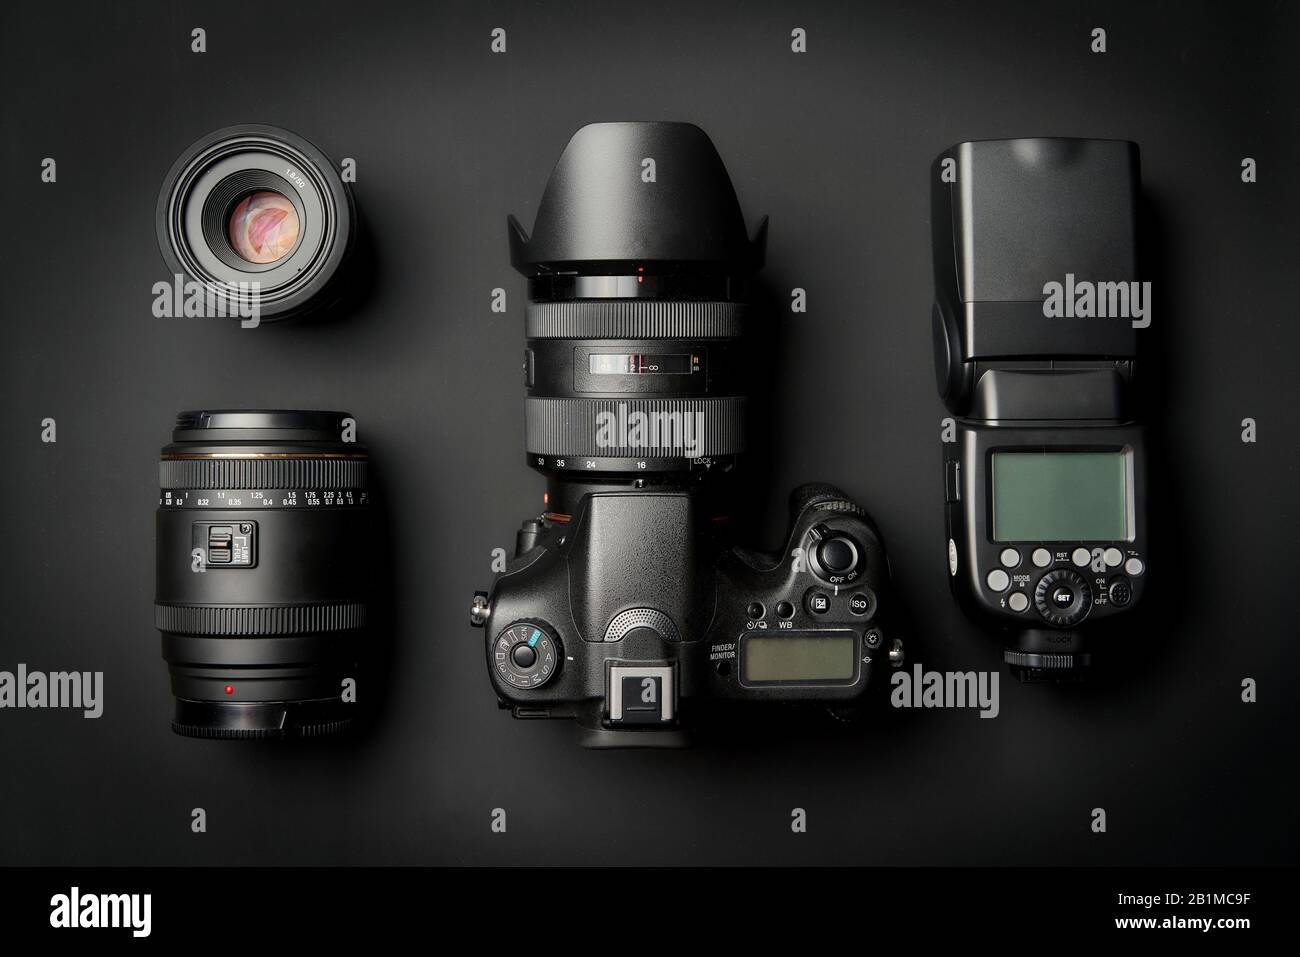 Vista superior del moderno equipo de cámaras digitales: DSLR con lente de zoom y capucha, lentes y linterna externa sobre superficie negra Foto de stock